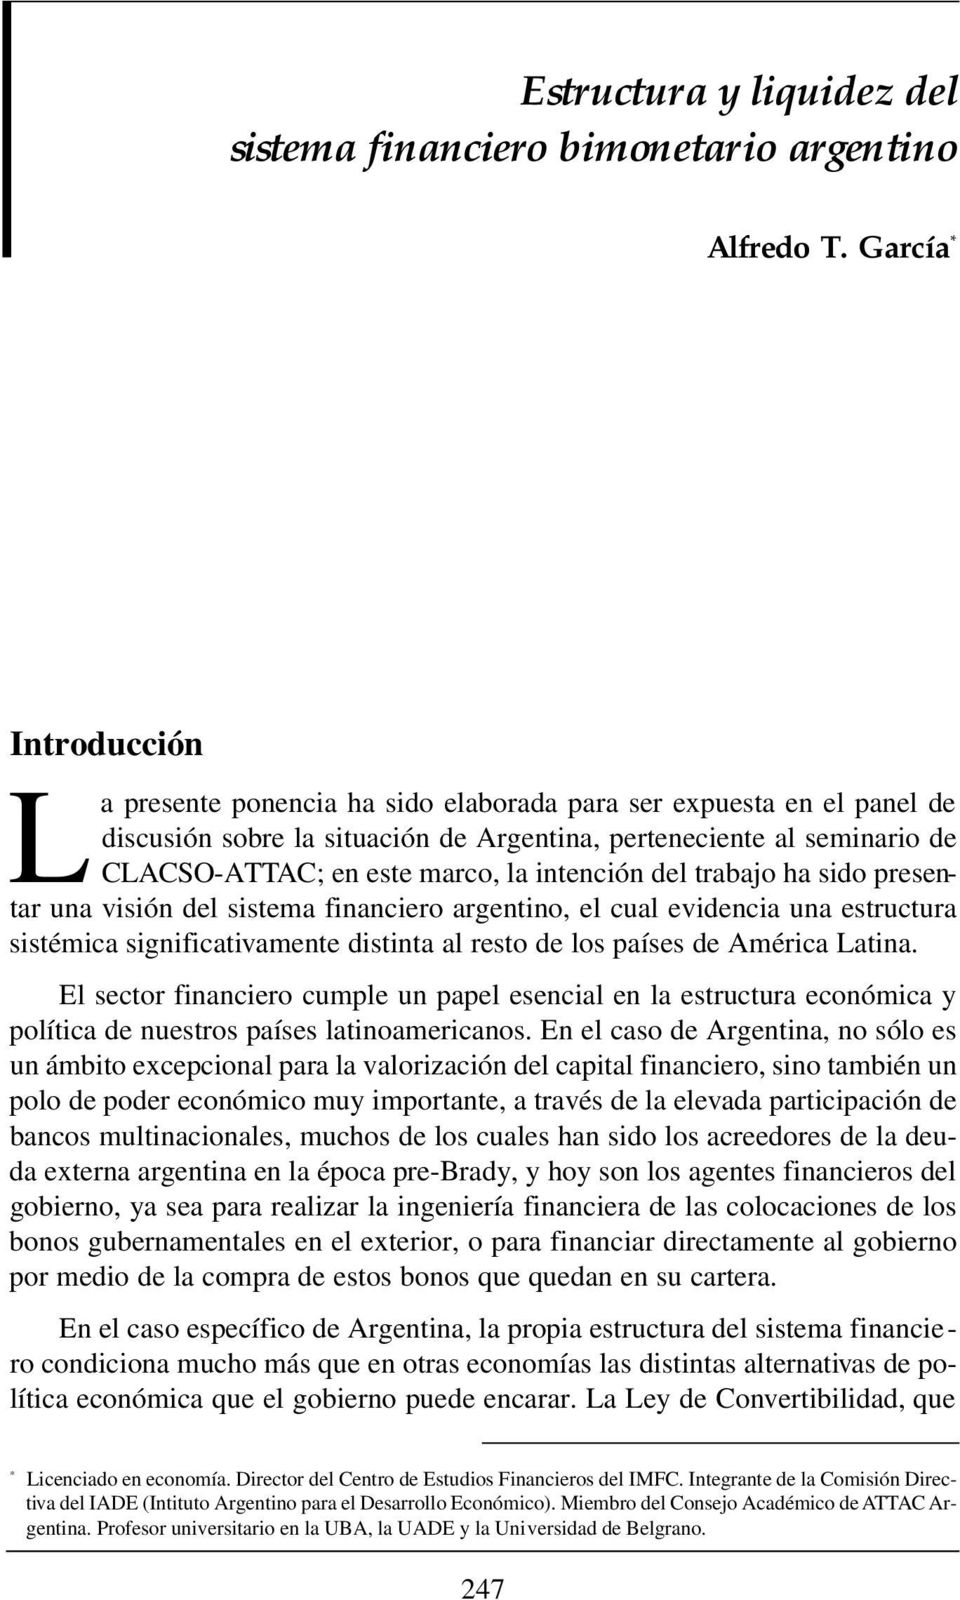 marco, la intención del trabajo ha sido presentar una visión del sistema financiero argentino, el cual evidencia una estructura sistémica significativamente distinta al resto de los países de América